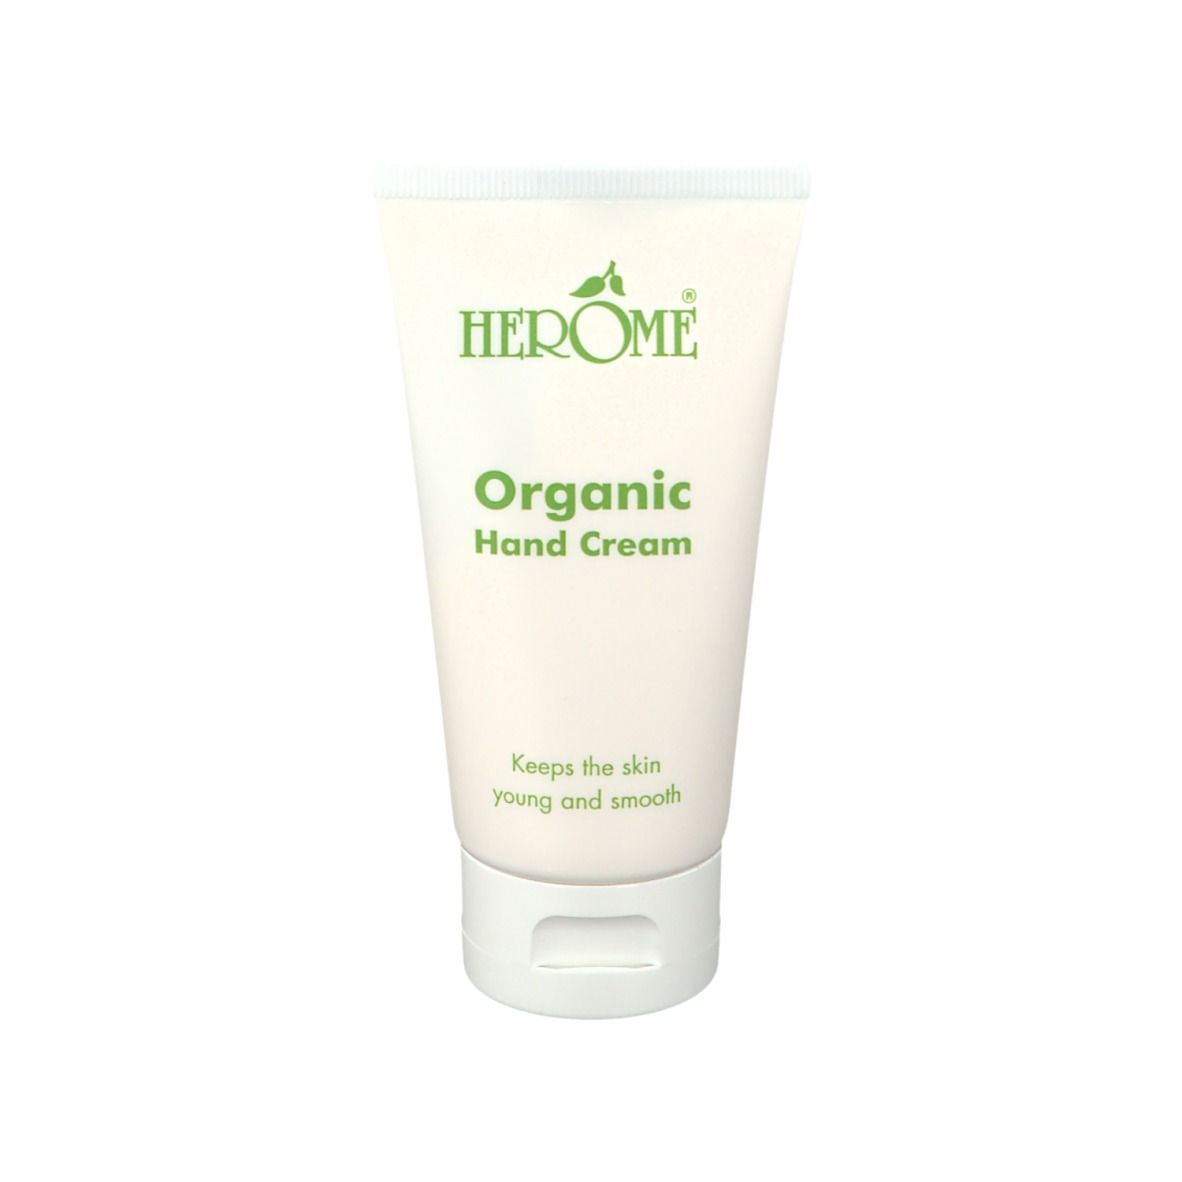 Herome Organic Hand Cream Bio 2150